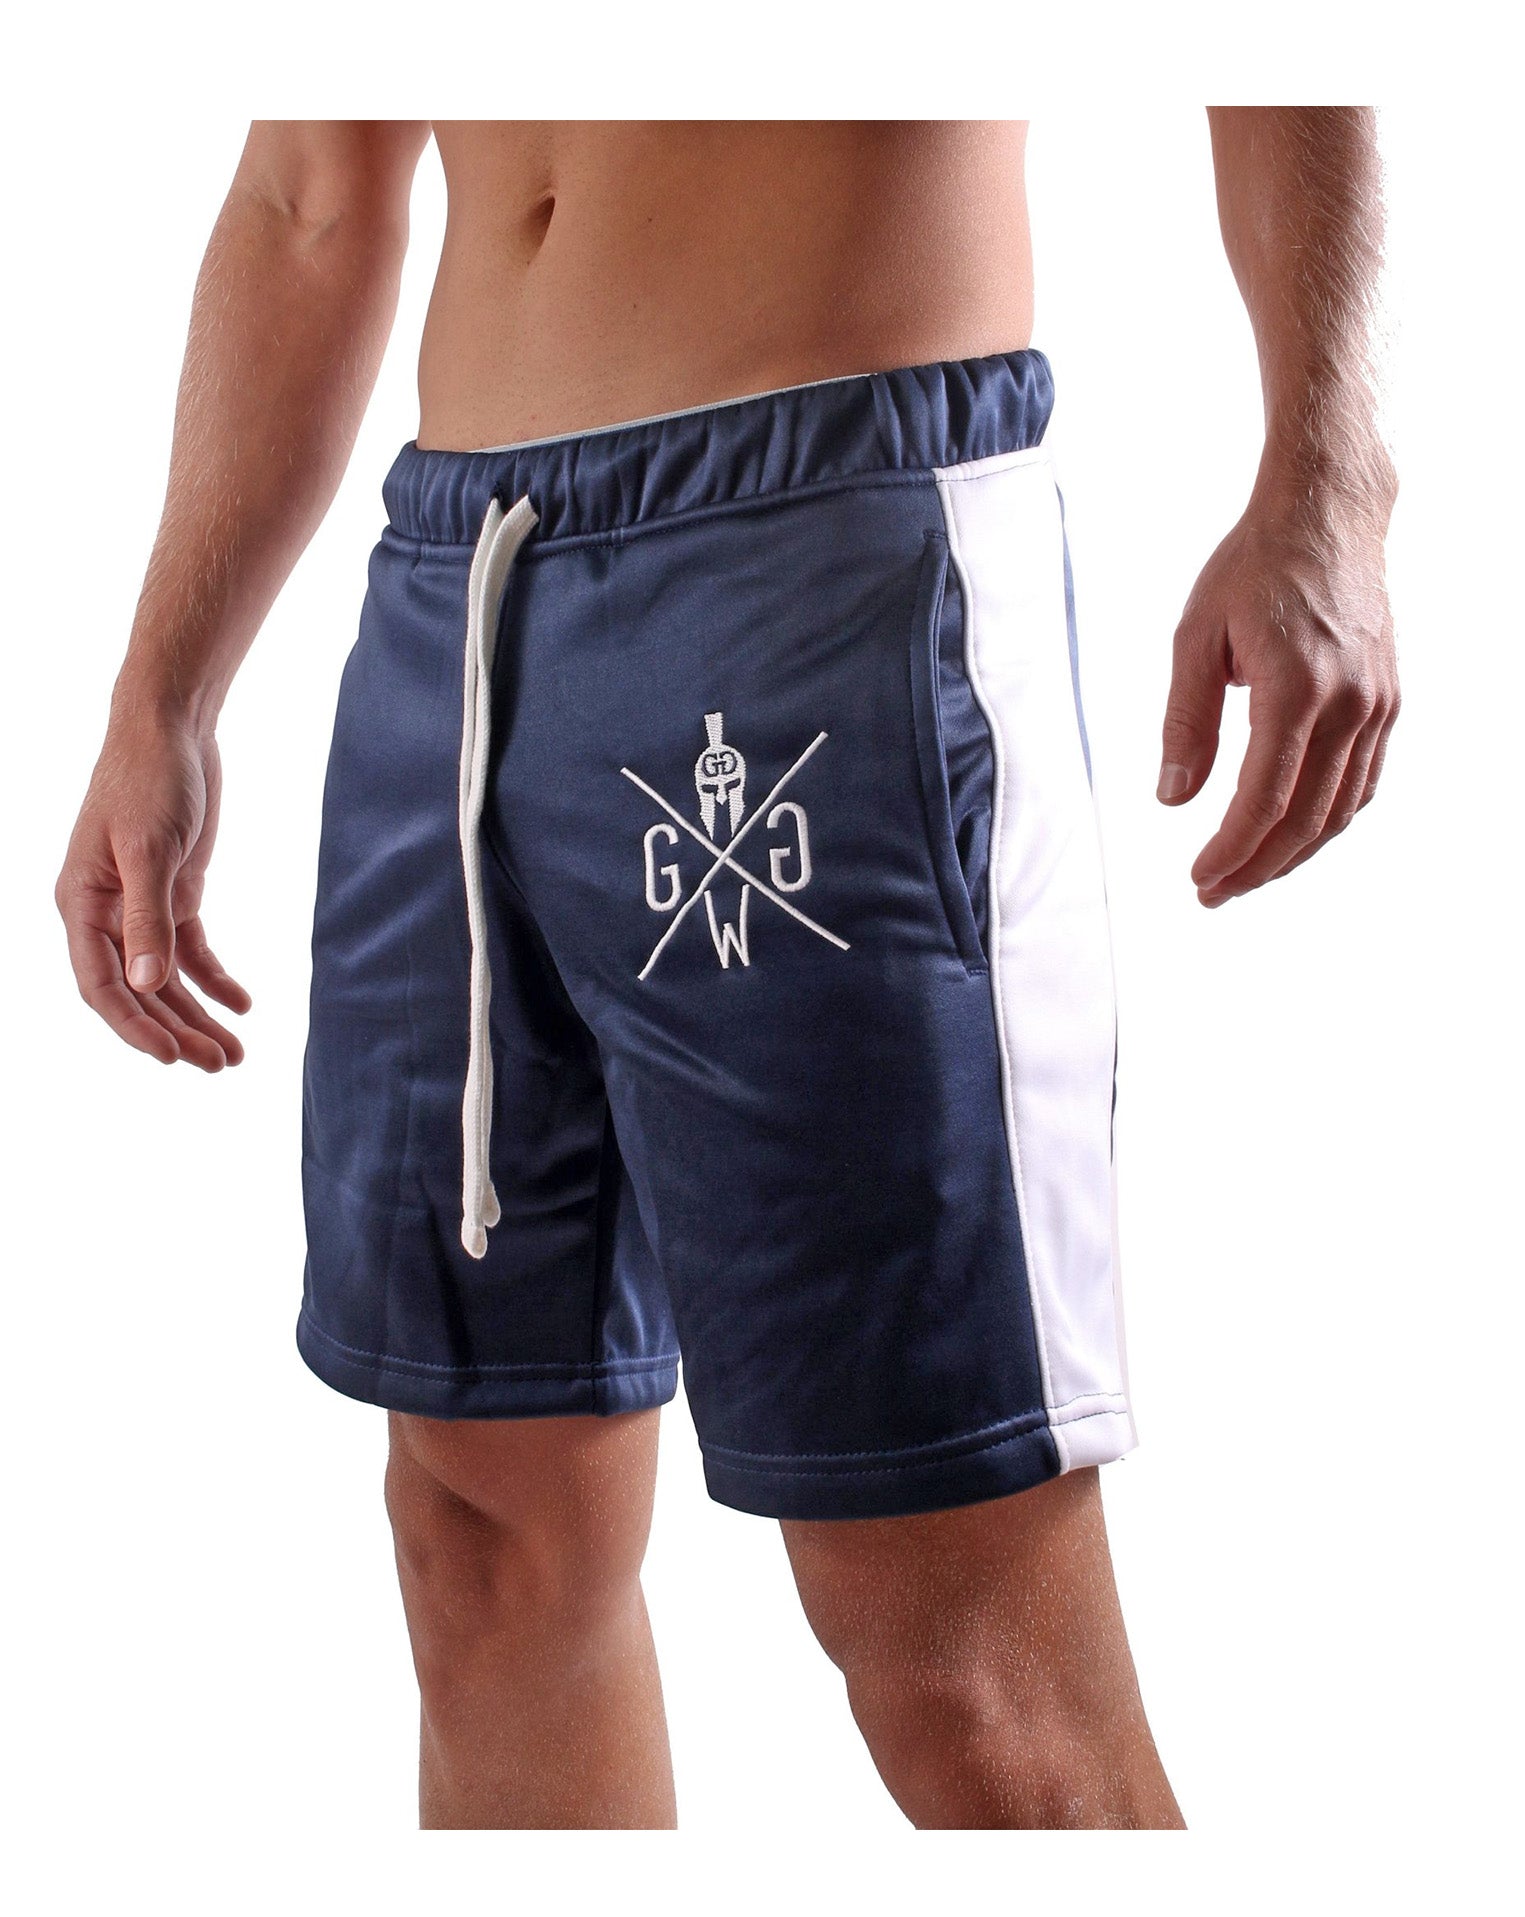 Shorts deportivos para hombre Pantalones cortos fitness y ocio. – Gym Generation®